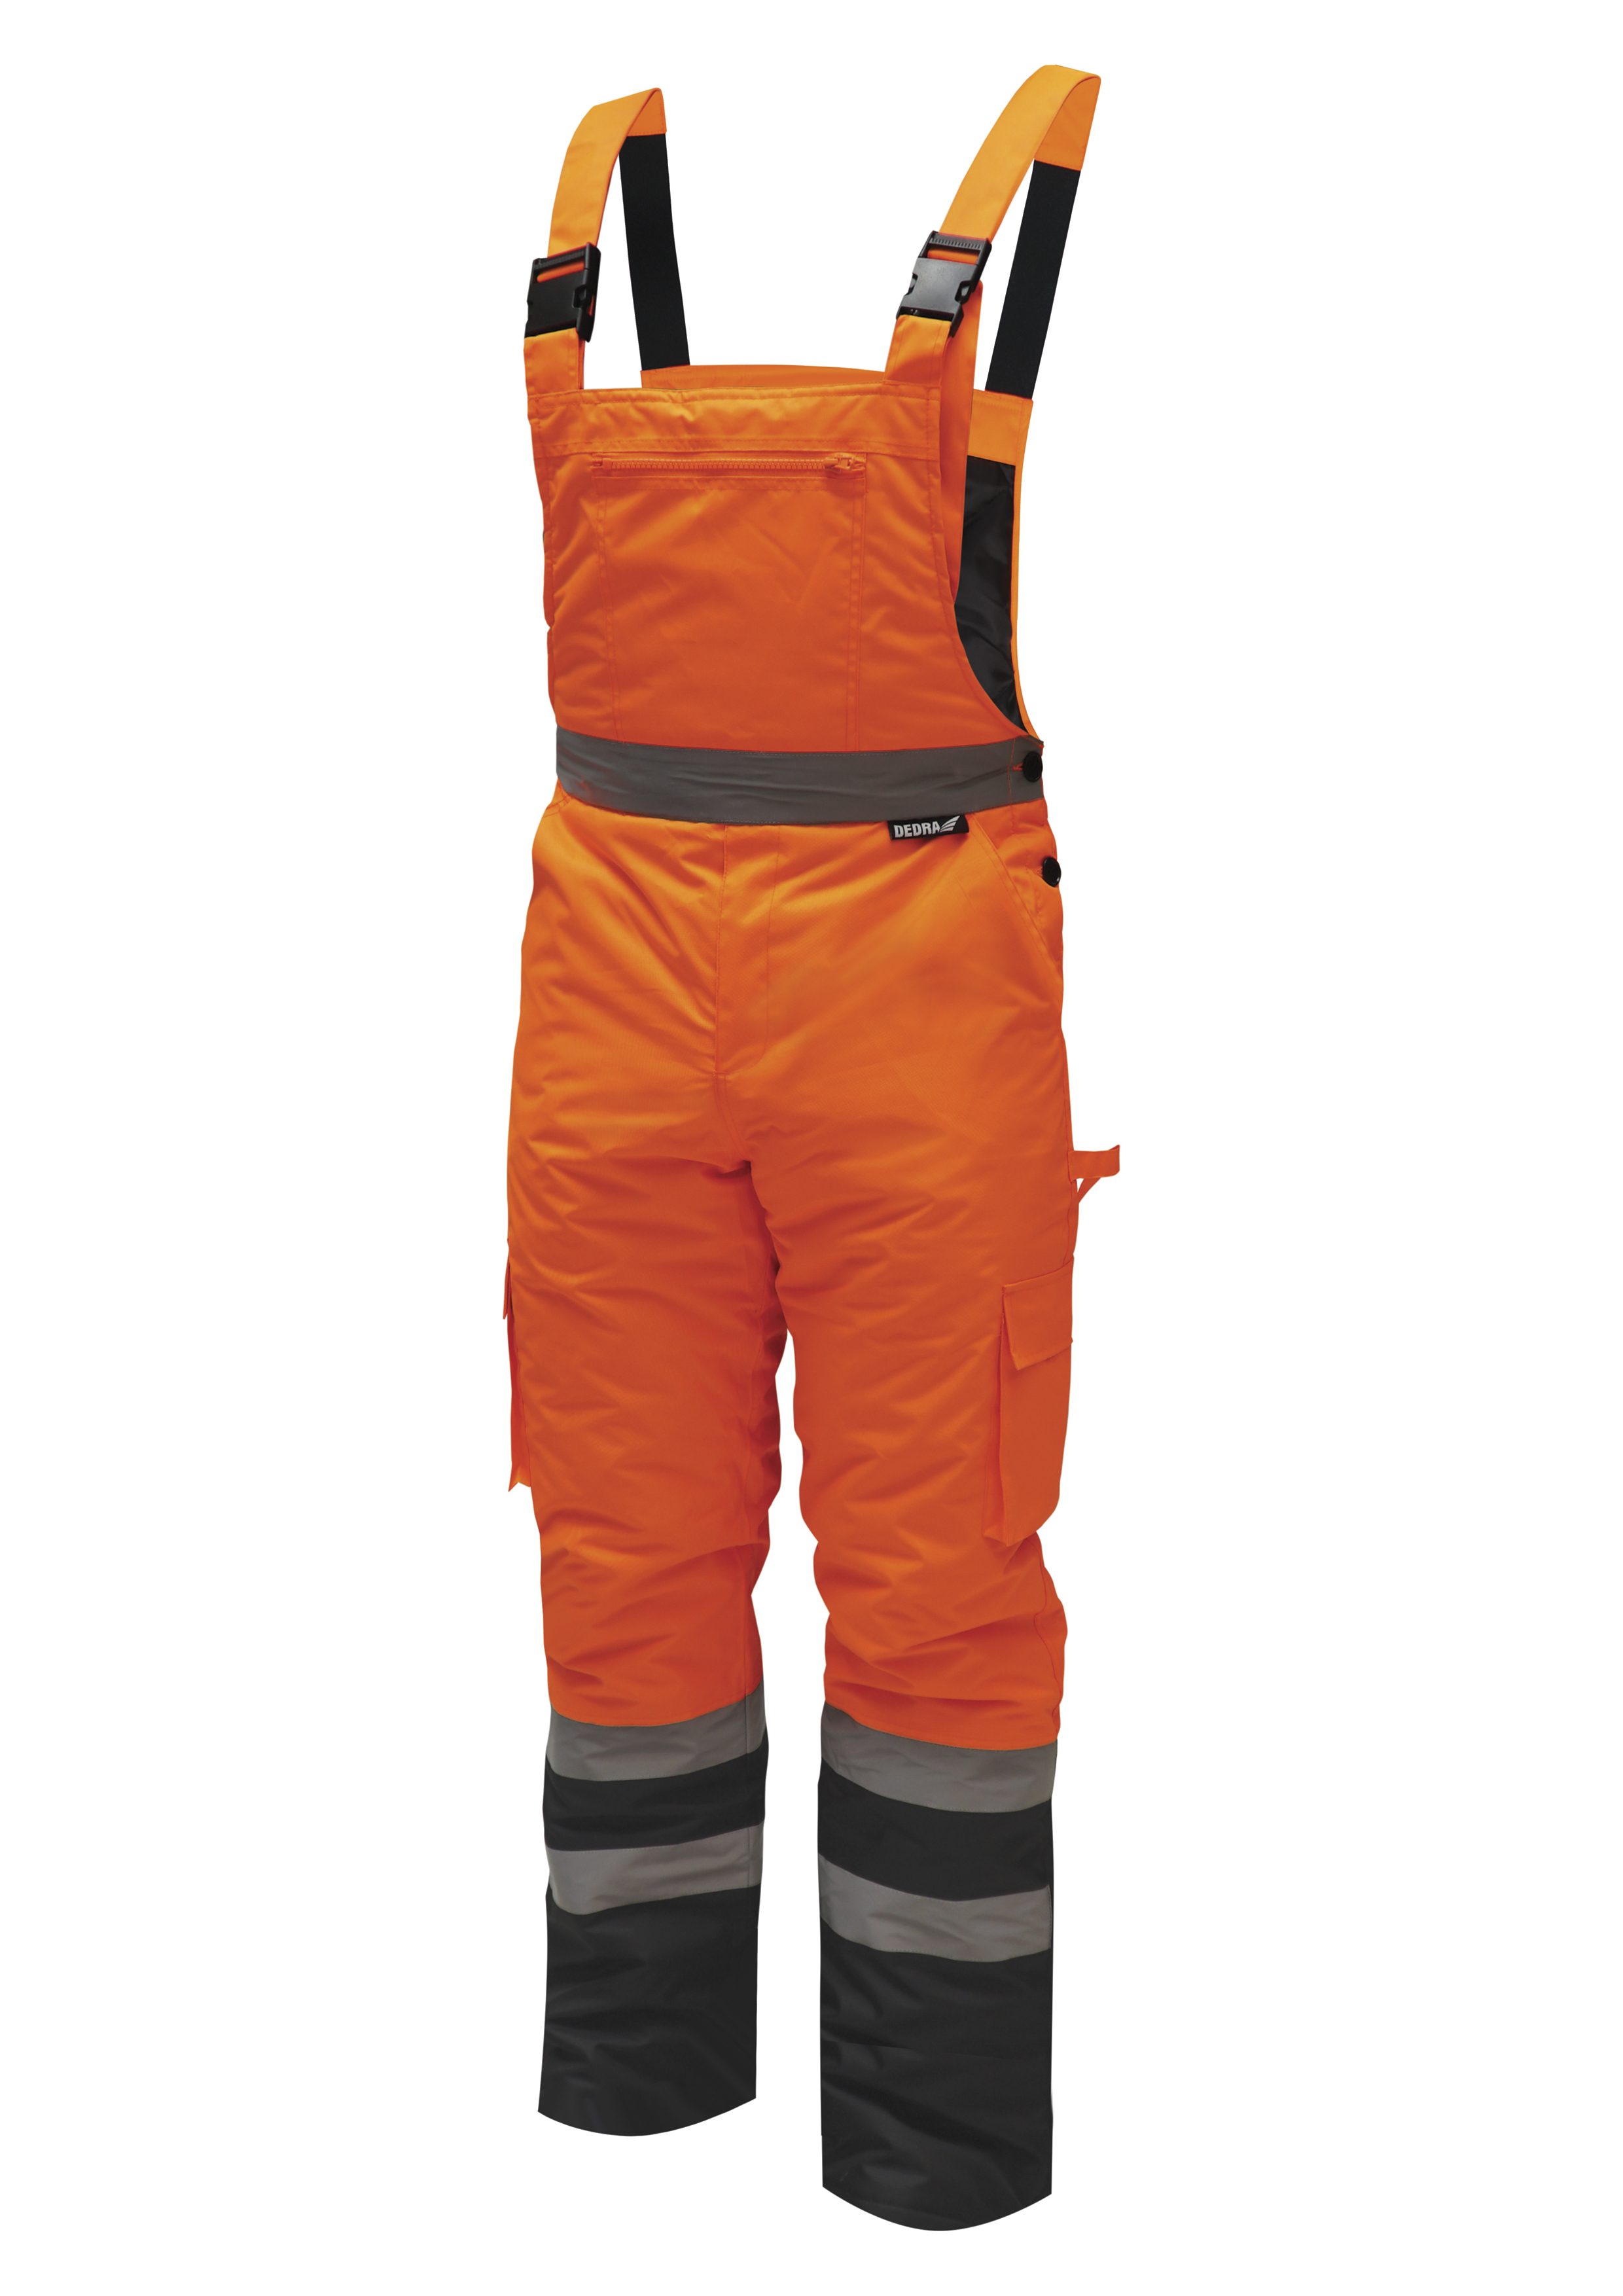 Reflexní zateplené kalhoty s laclem vel. L,oranžové DEDRA BH80SO2-L + Dárek, servis bez starostí v hodnotě 300Kč